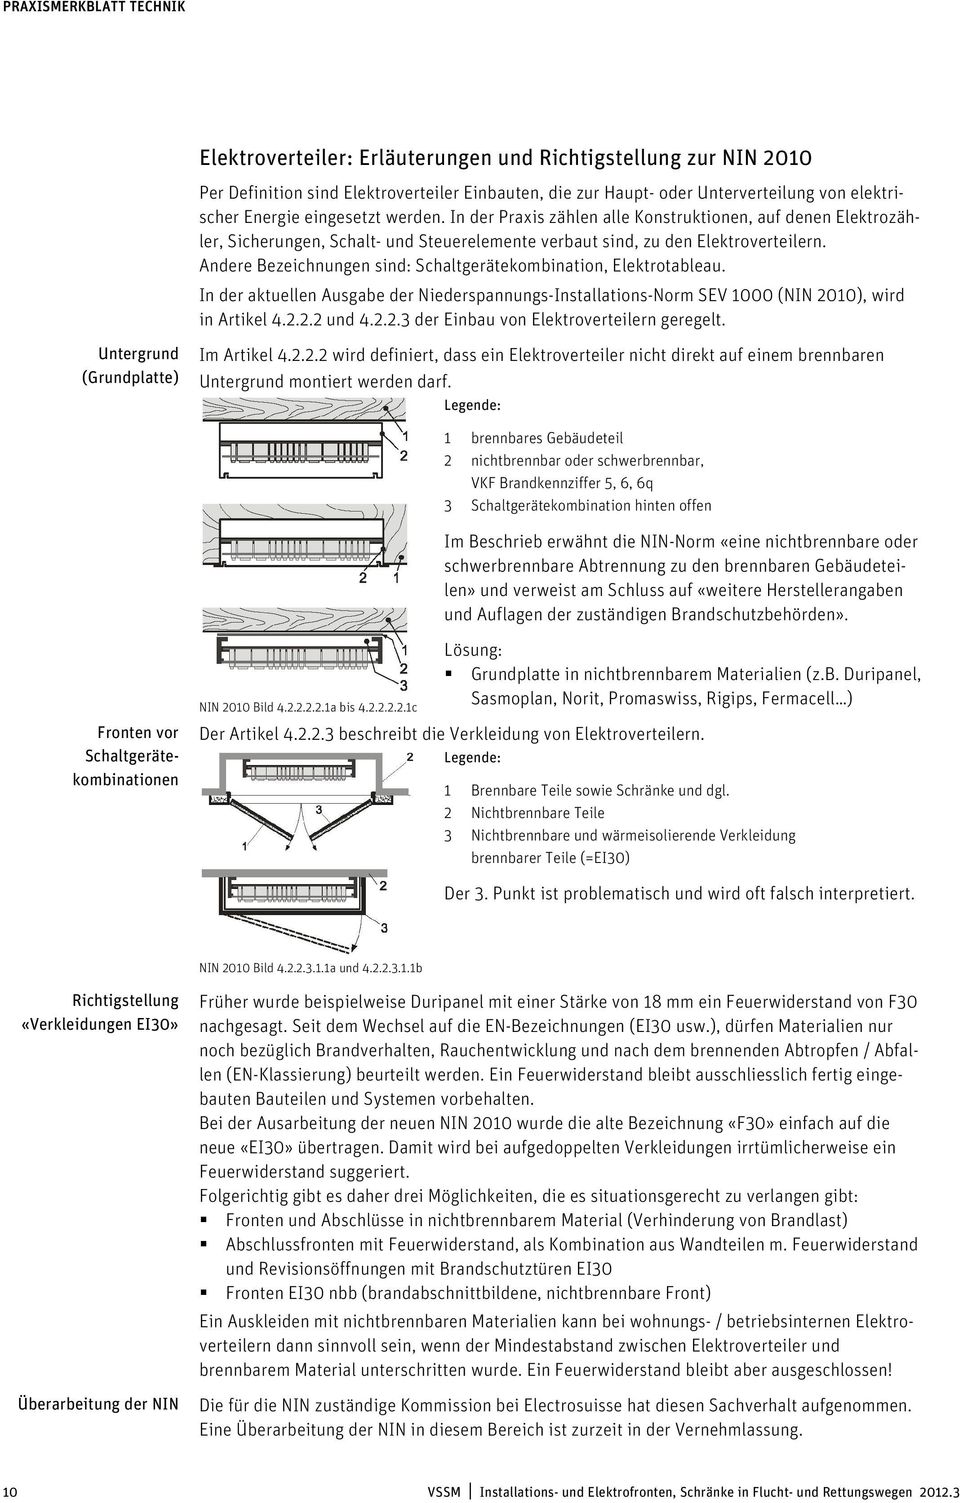 Andere Bezeichnungen sind: Schaltgerätekombination, Elektrotableau. In der aktuellen Ausgabe der Niederspannungs-Installations-Norm SEV 1000 (NIN 2010), wird in Artikel 4.2.2.2 und 4.2.2.3 der Einbau von Elektroverteilern geregelt.